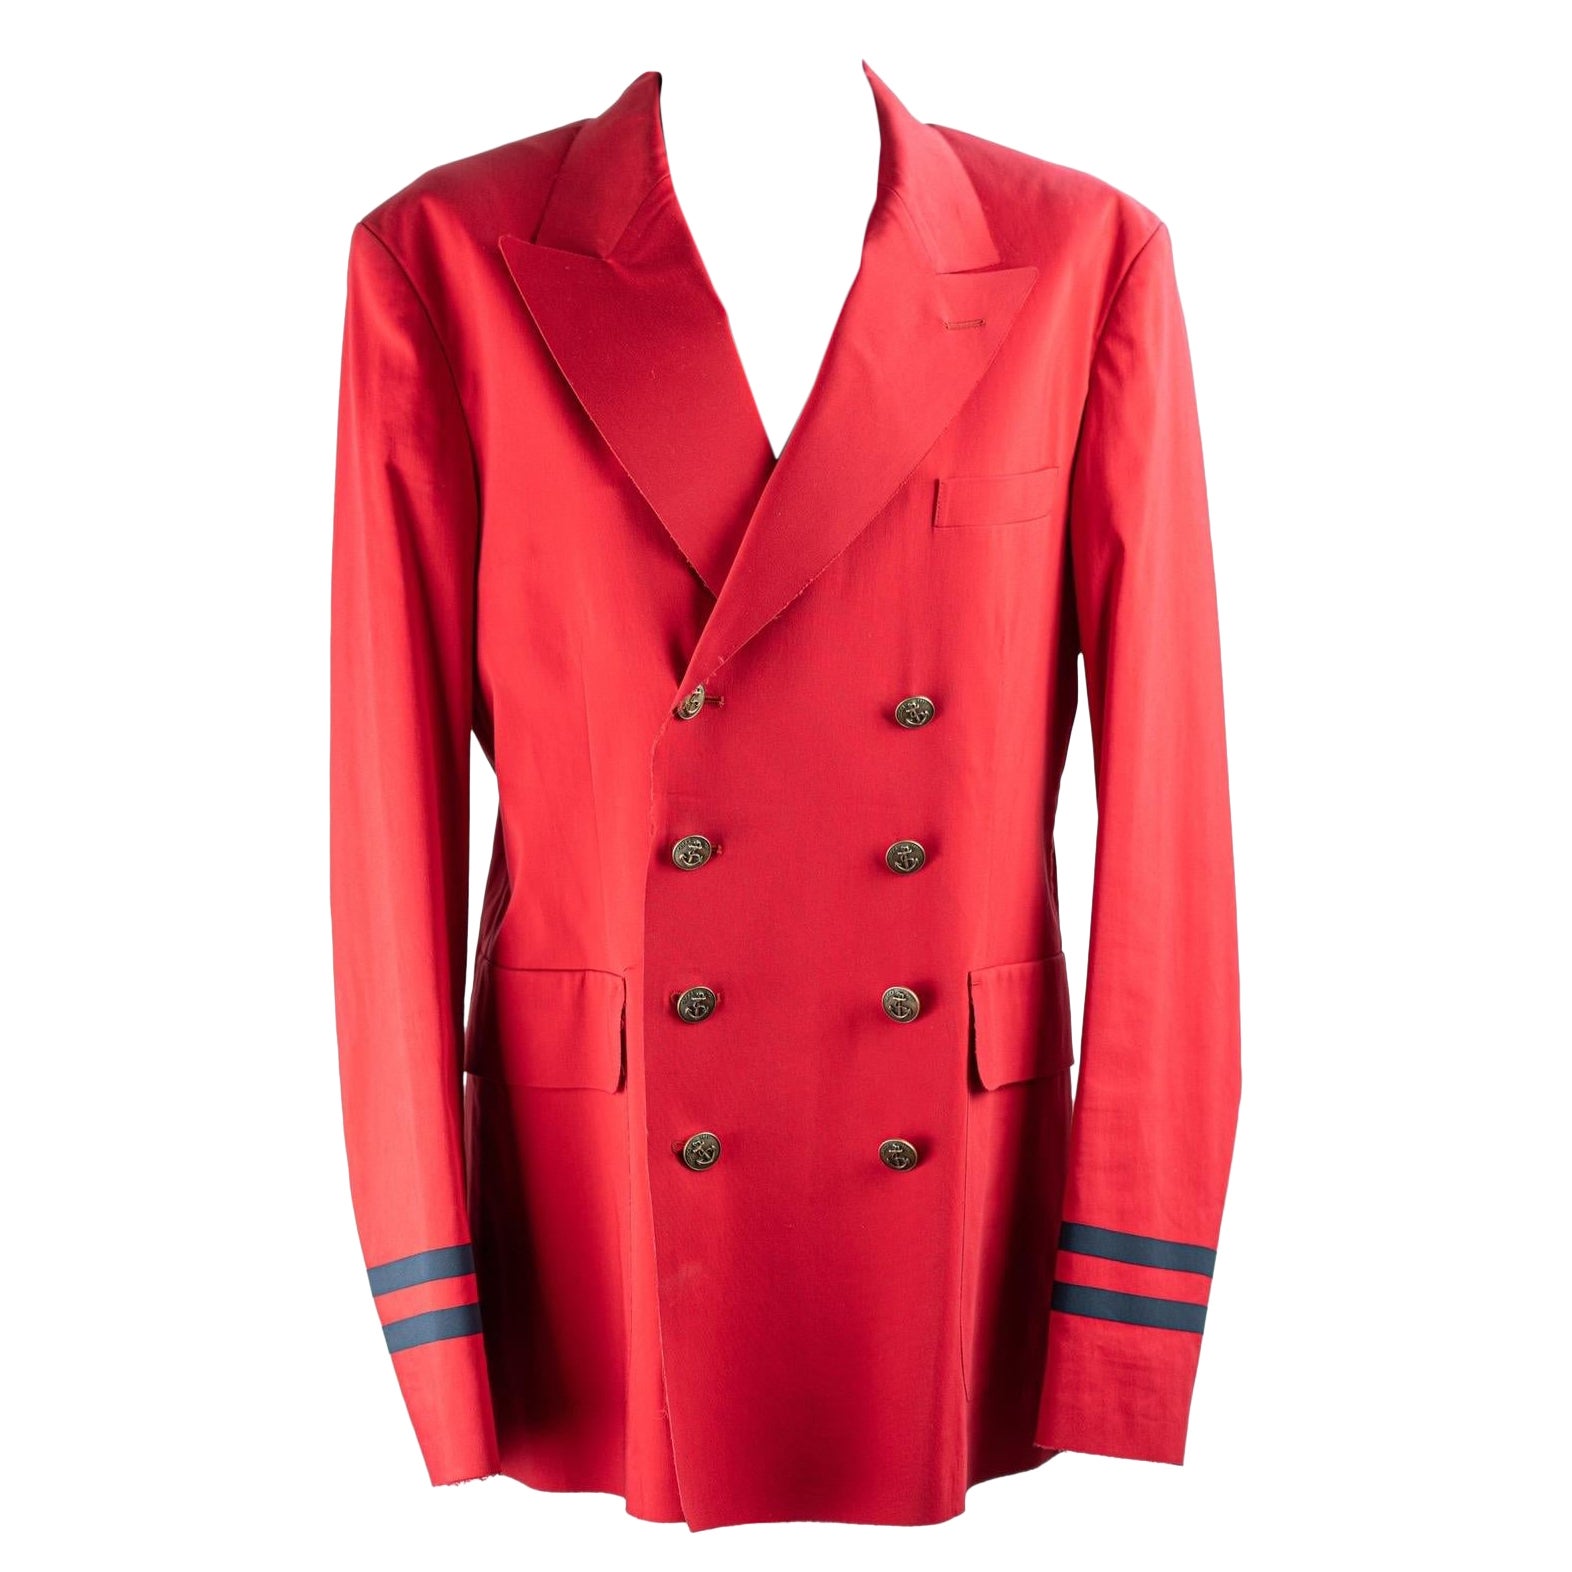 Gucci SS 2015 sartorial jacket